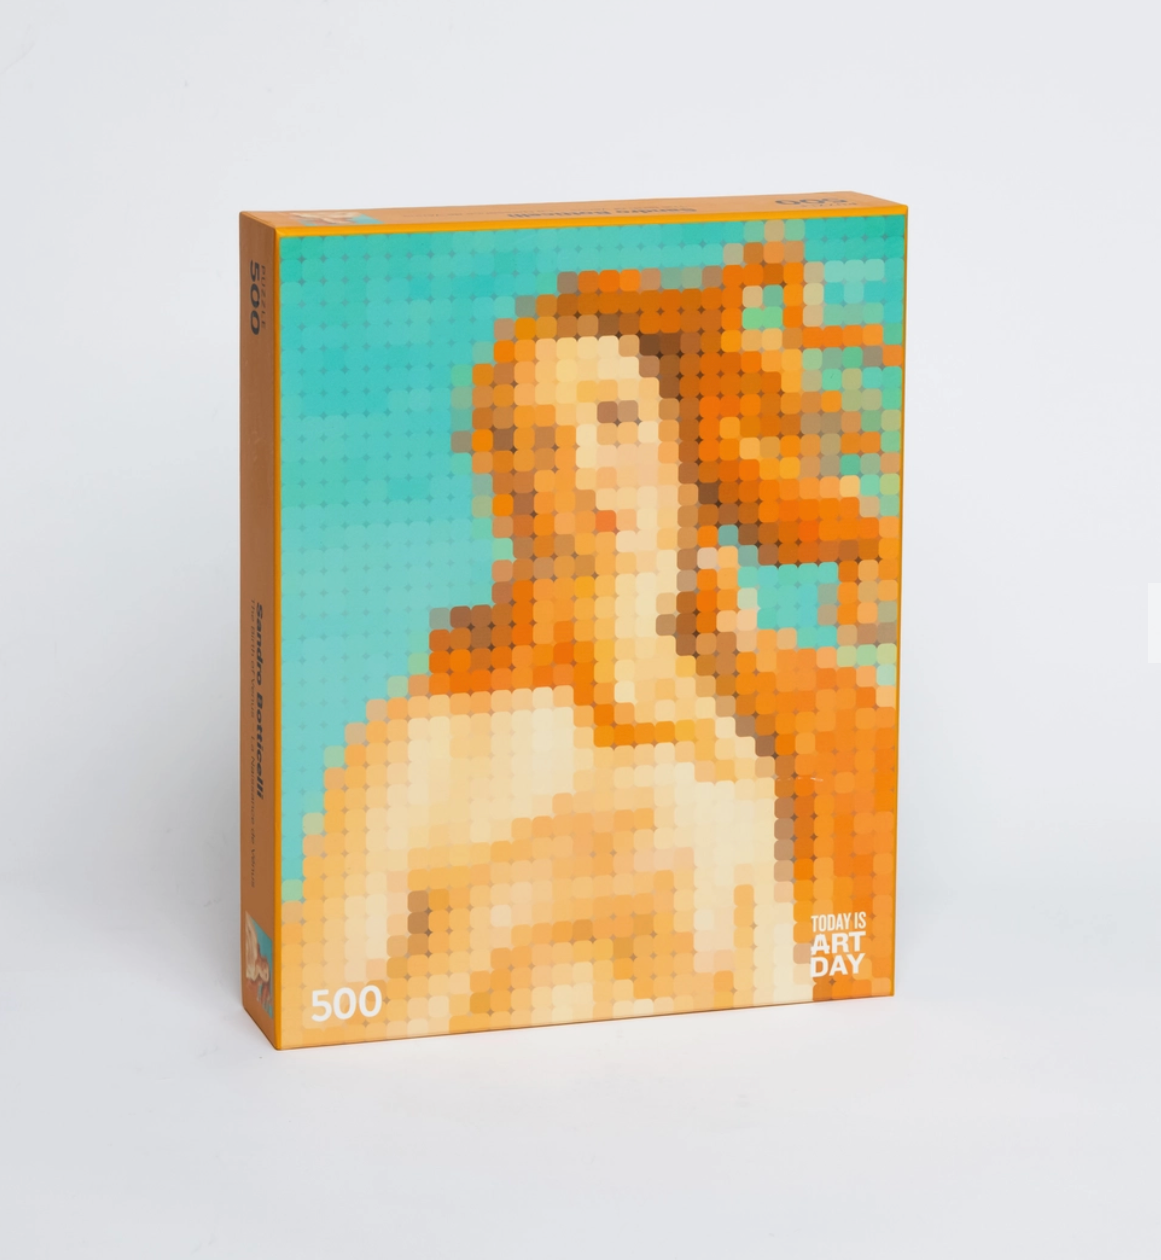 Pixel Art Puzzle- Sandro Botticelli - Birth of Venus